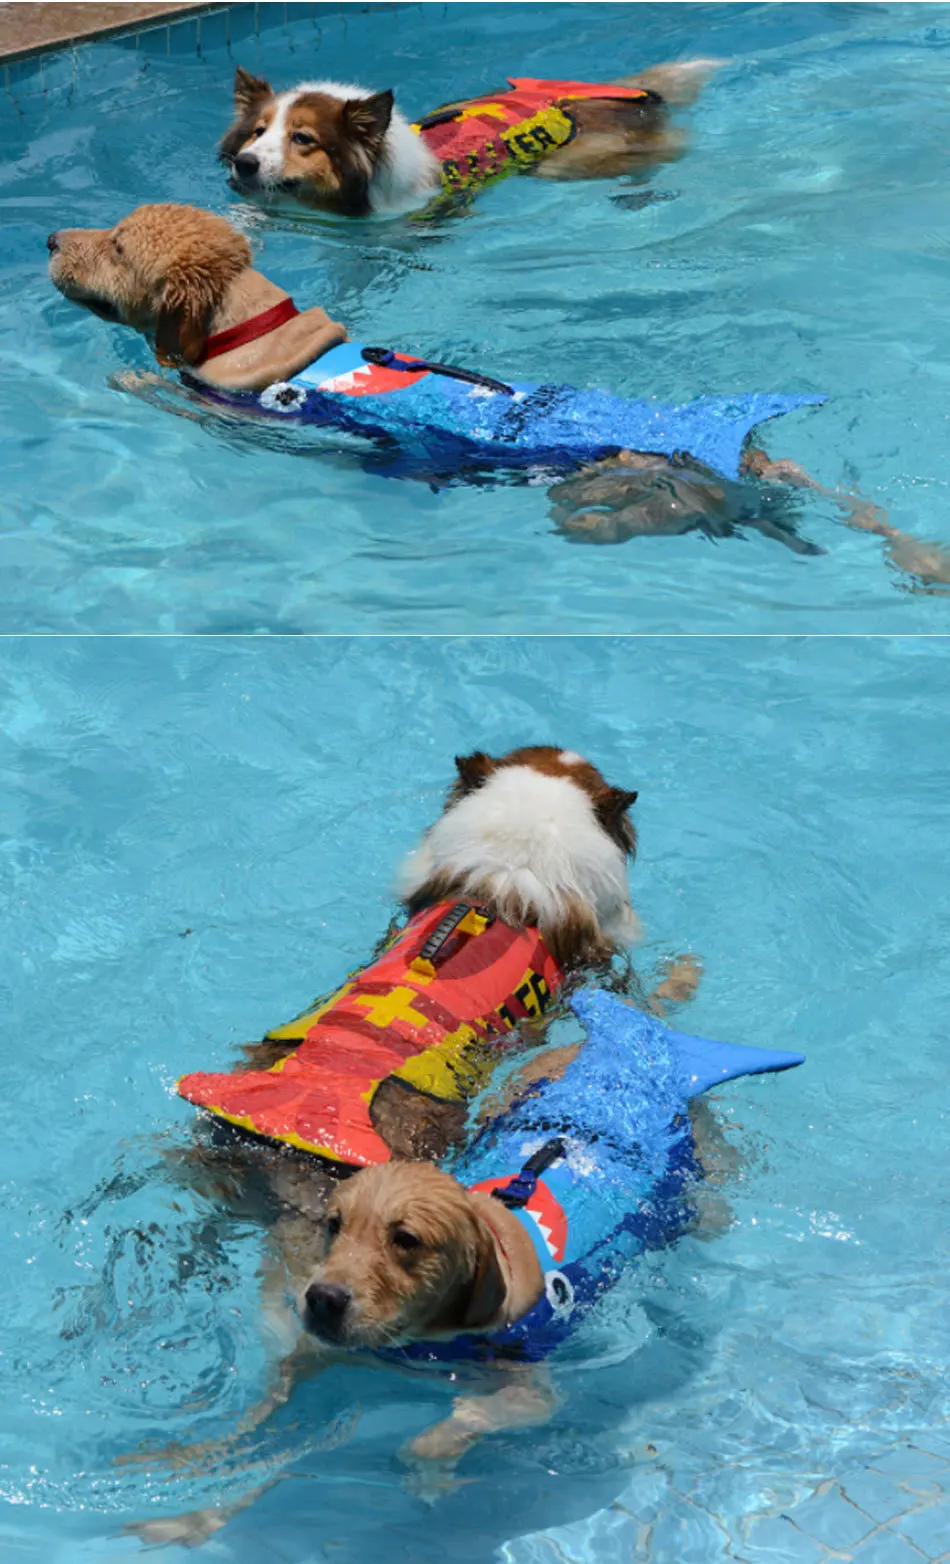 RFWCAK спасательный жилет для собак, летний спасательный жилет для домашних животных, светоотражающий костюм для щенков, спасательная одежда для плавания, одежда для безопасности для собак, одежда для плавания